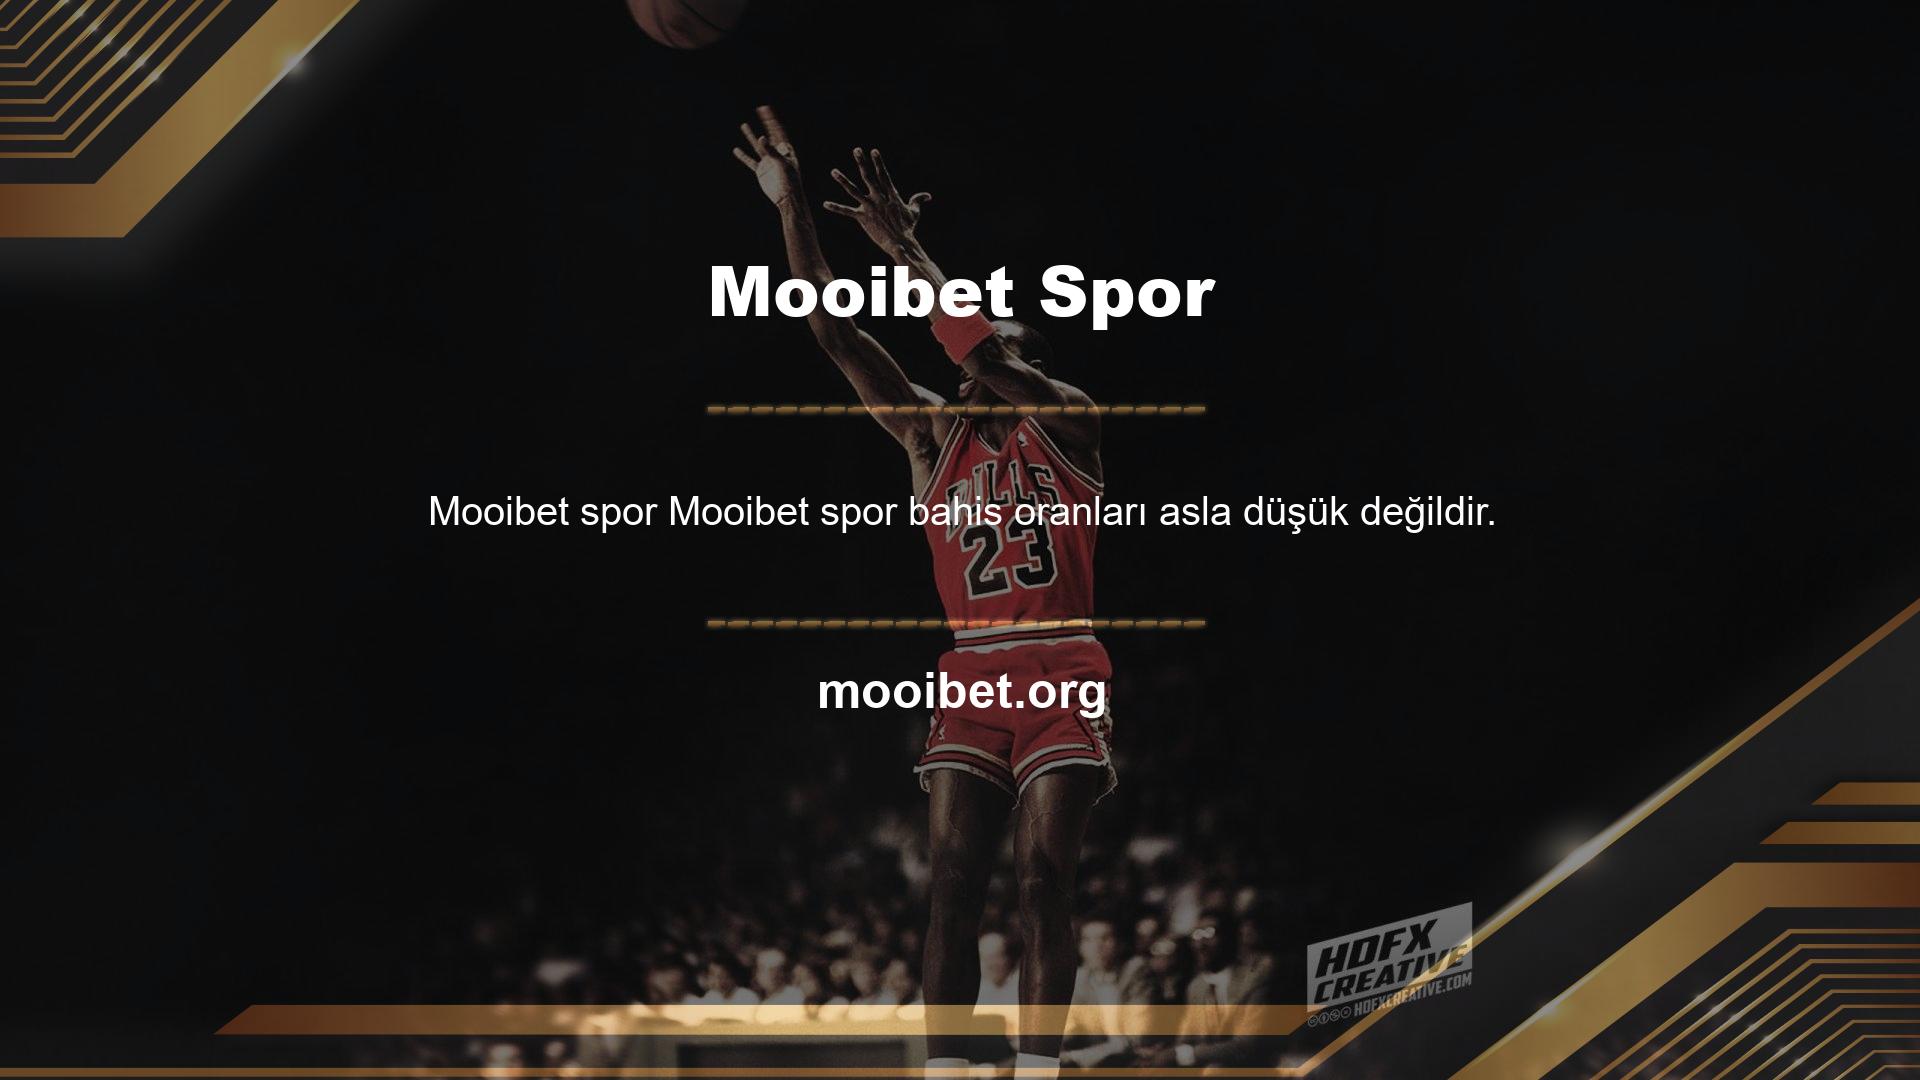 Mooibet Spor